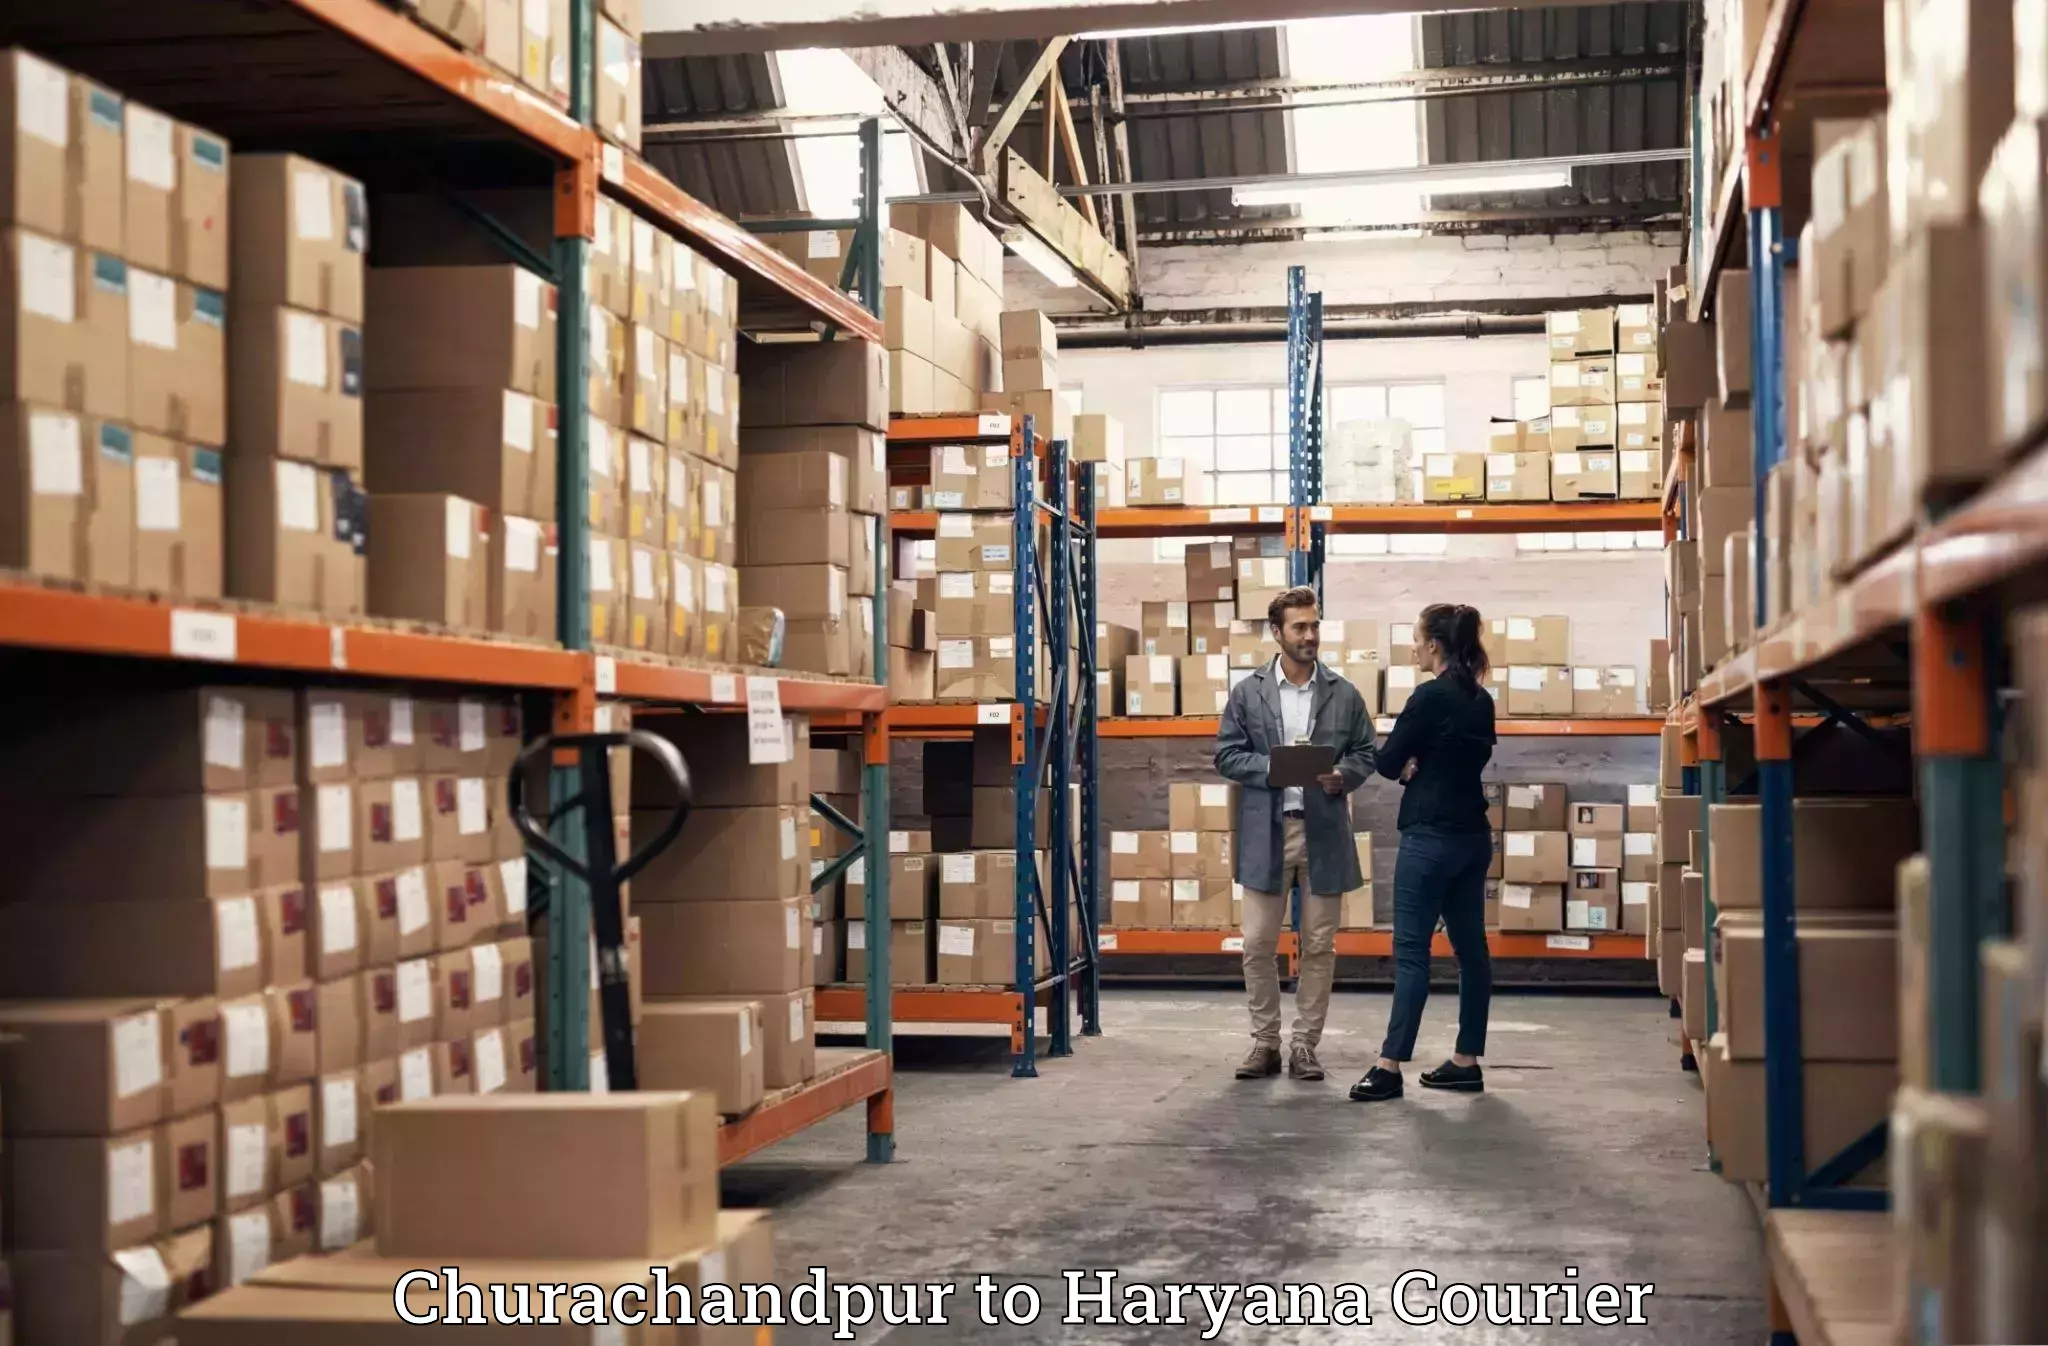 Luggage delivery app Churachandpur to Assandh